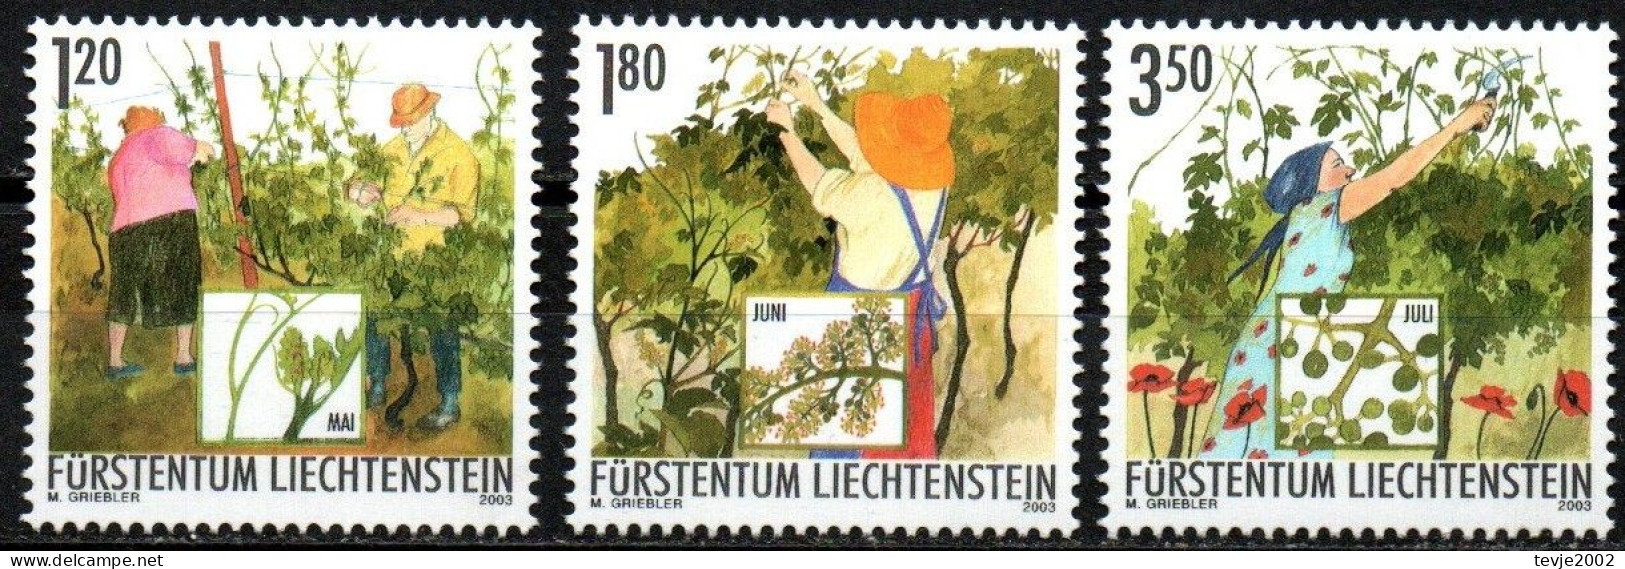 Liechtenstein 2003 - Mi.Nr. 1316 - 1318 - Postfrisch MNH - Weinbau Winzer Wine Growing Winemaker - Agriculture